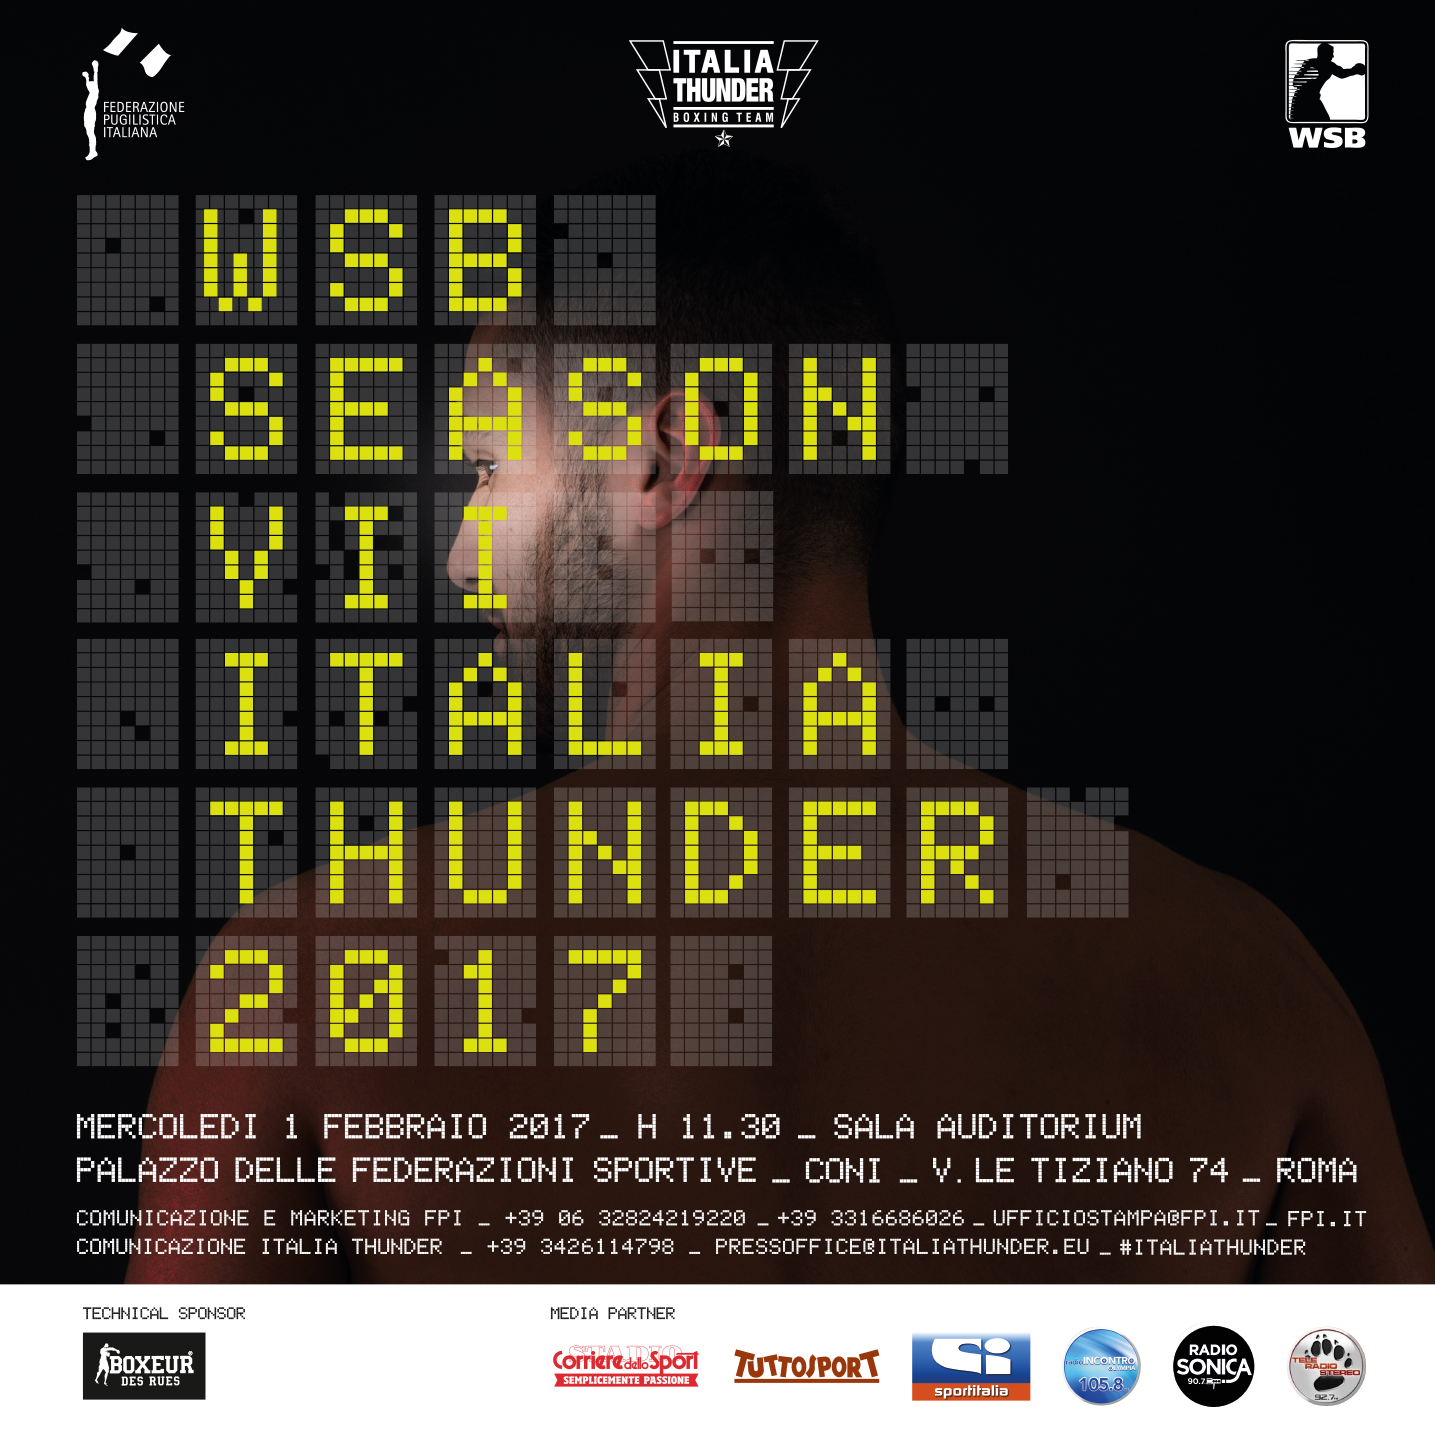 Mercoledì 1 Febbraio a Roma la Conferenza Stampa di Presentazione dell'Italia Thunder per le WSB 2017 #WSBVII